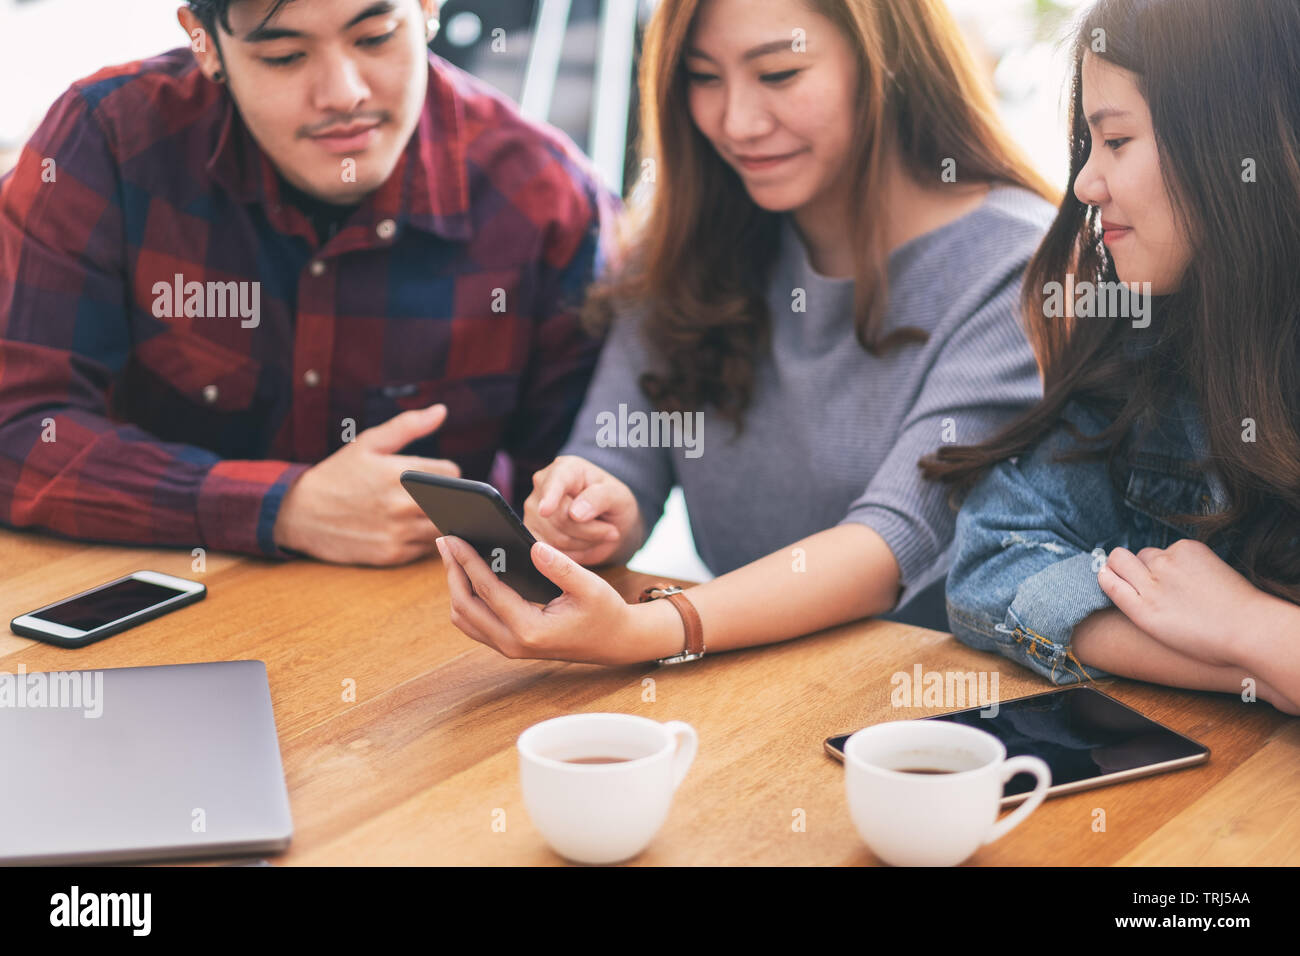 Tres jóvenes asiáticos y mirando a la gente usando el mismo móvil juntos Foto de stock